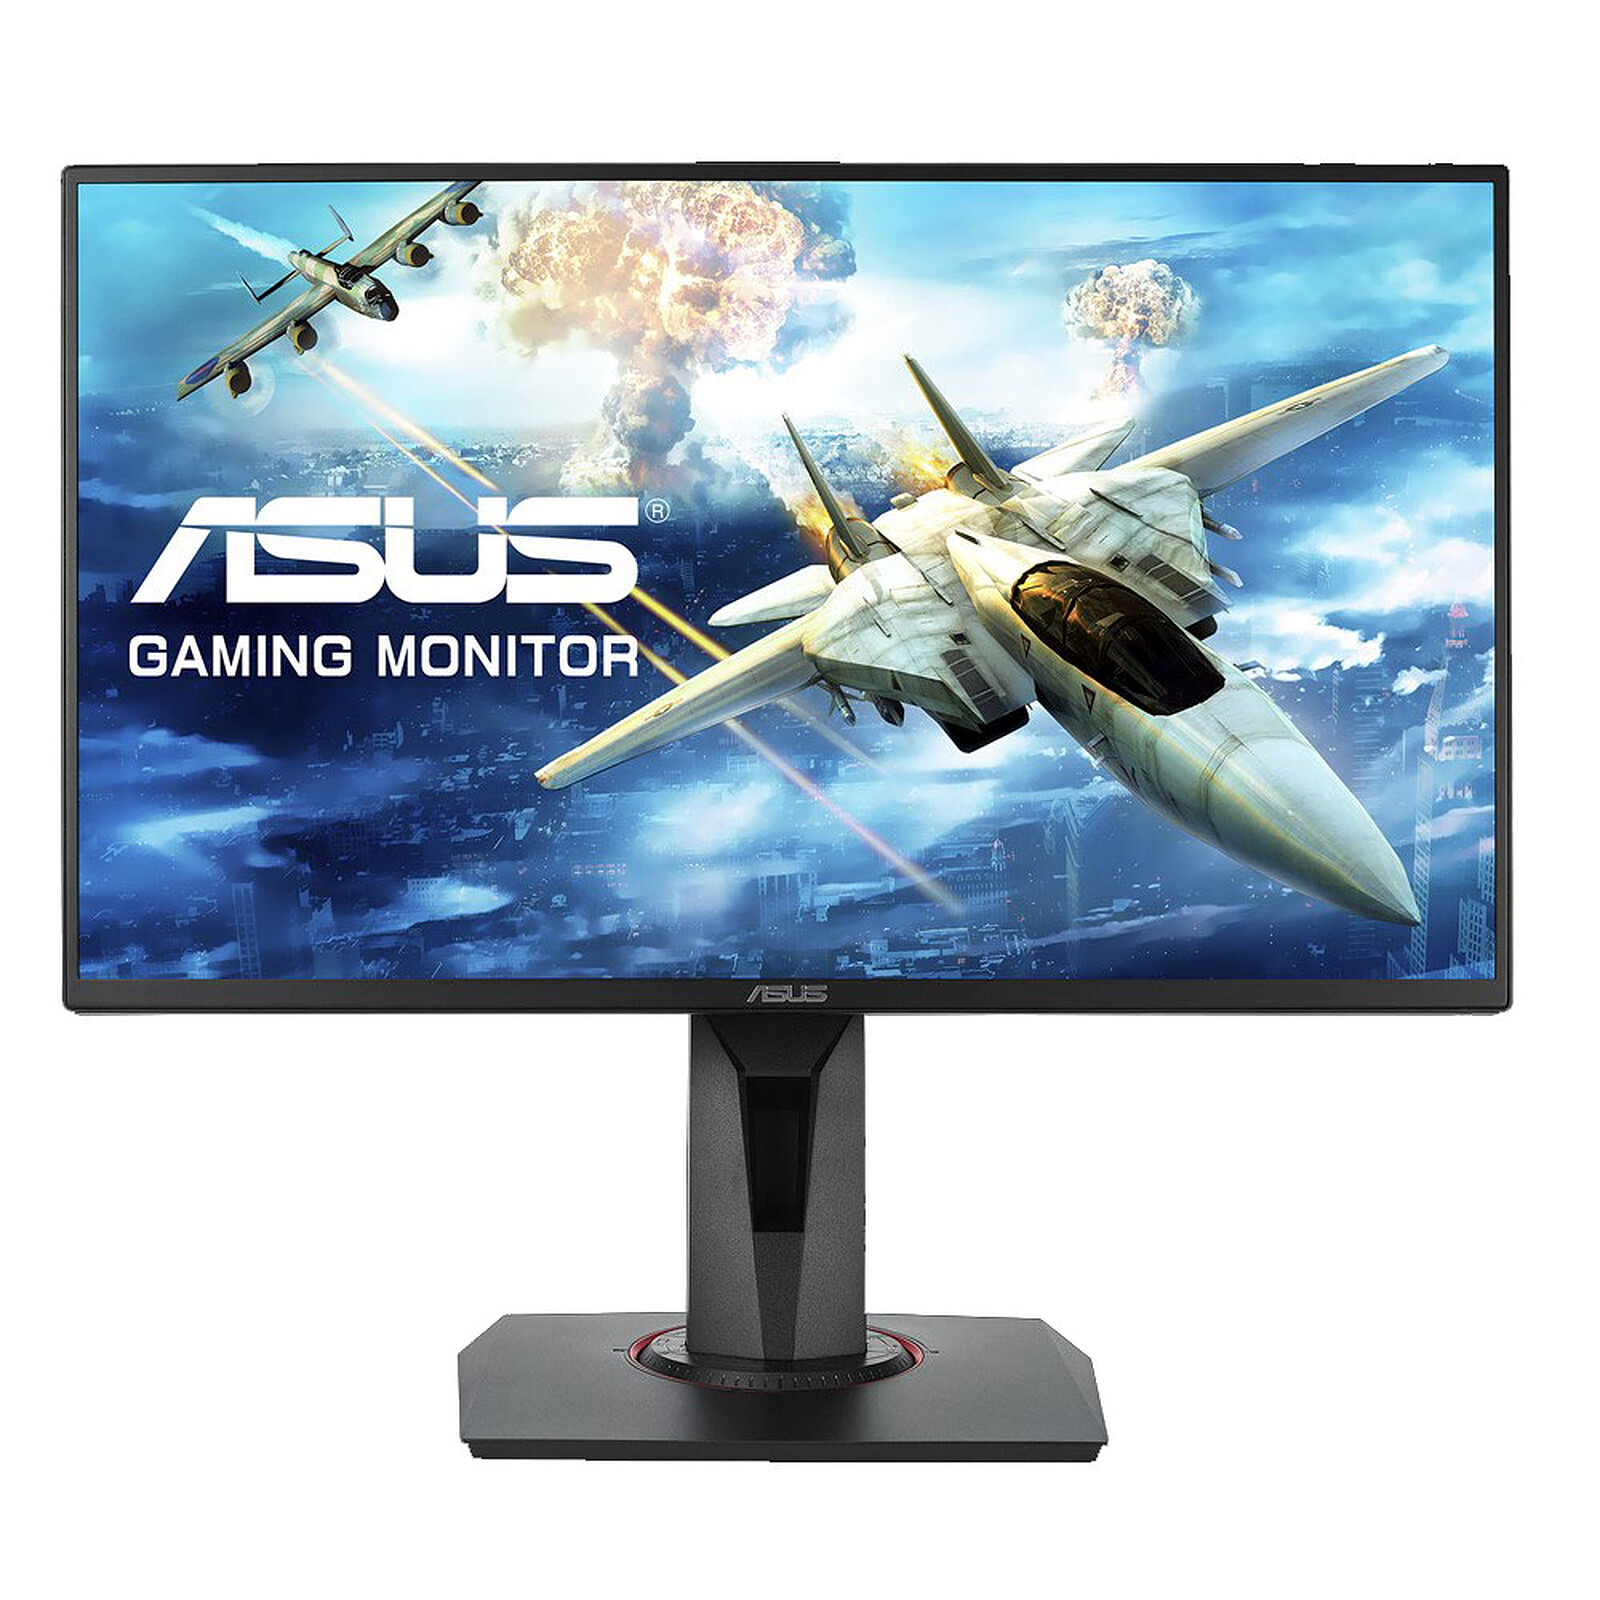 AOC Gaming AG251FG - AGON Series - écran LED - 24.5 - 1920 x 1080 @ 240 Hz  - TN - 400 cd/m² - 1000:1 - 1 ms - HDMI, DisplayPort - haut-parleurs -  noir, rouge - Ecrans PC